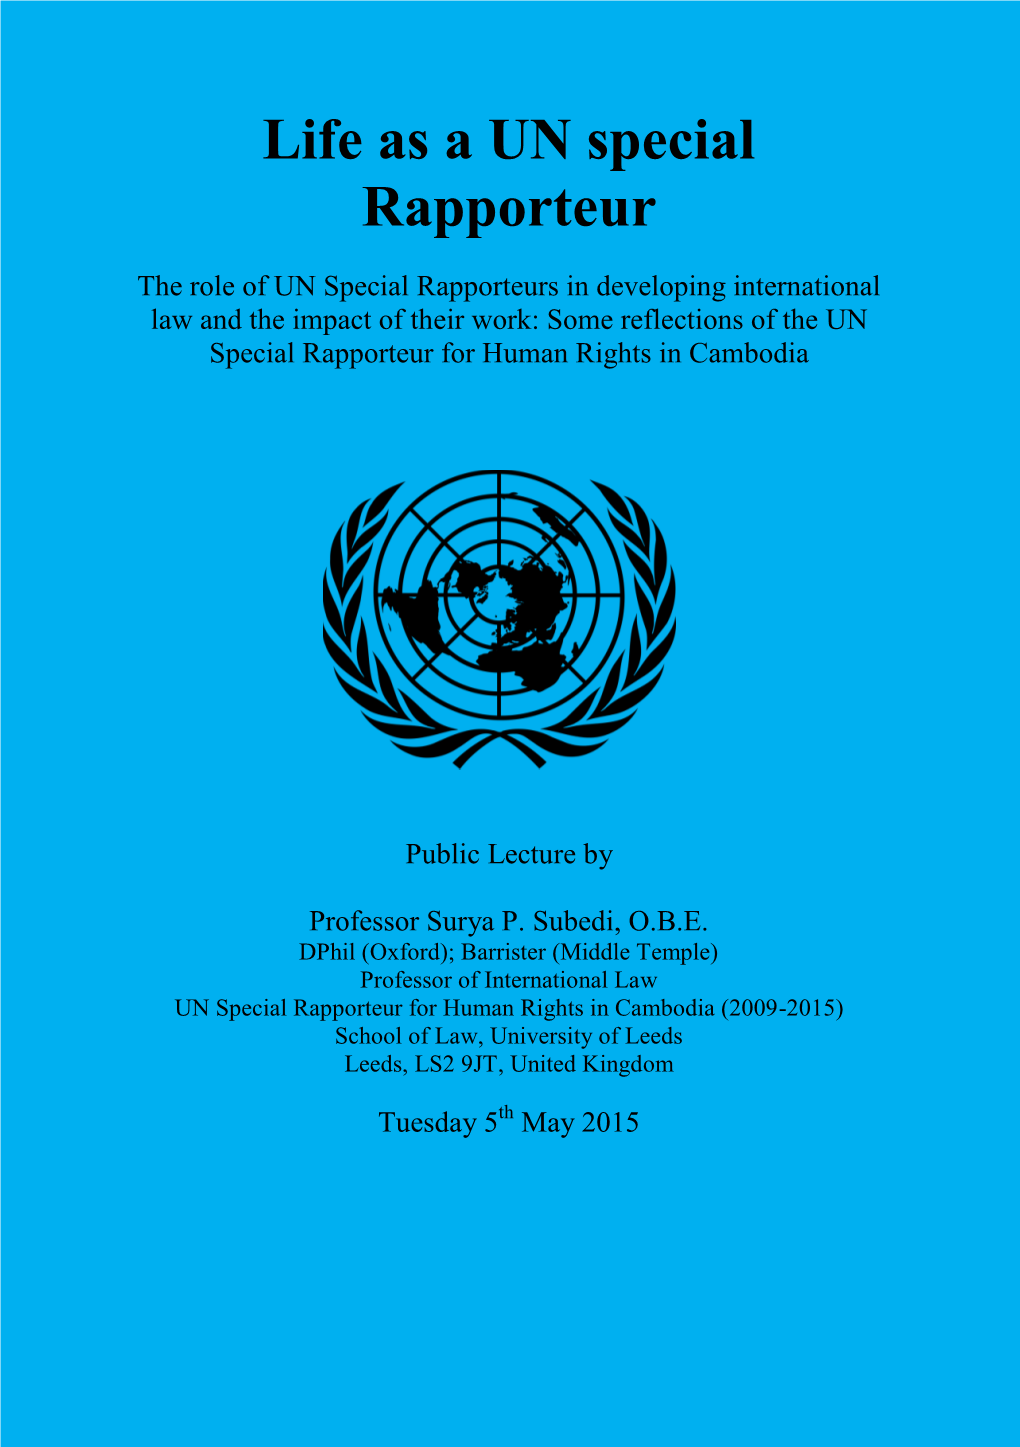 Life As a UN Special Rapporteur